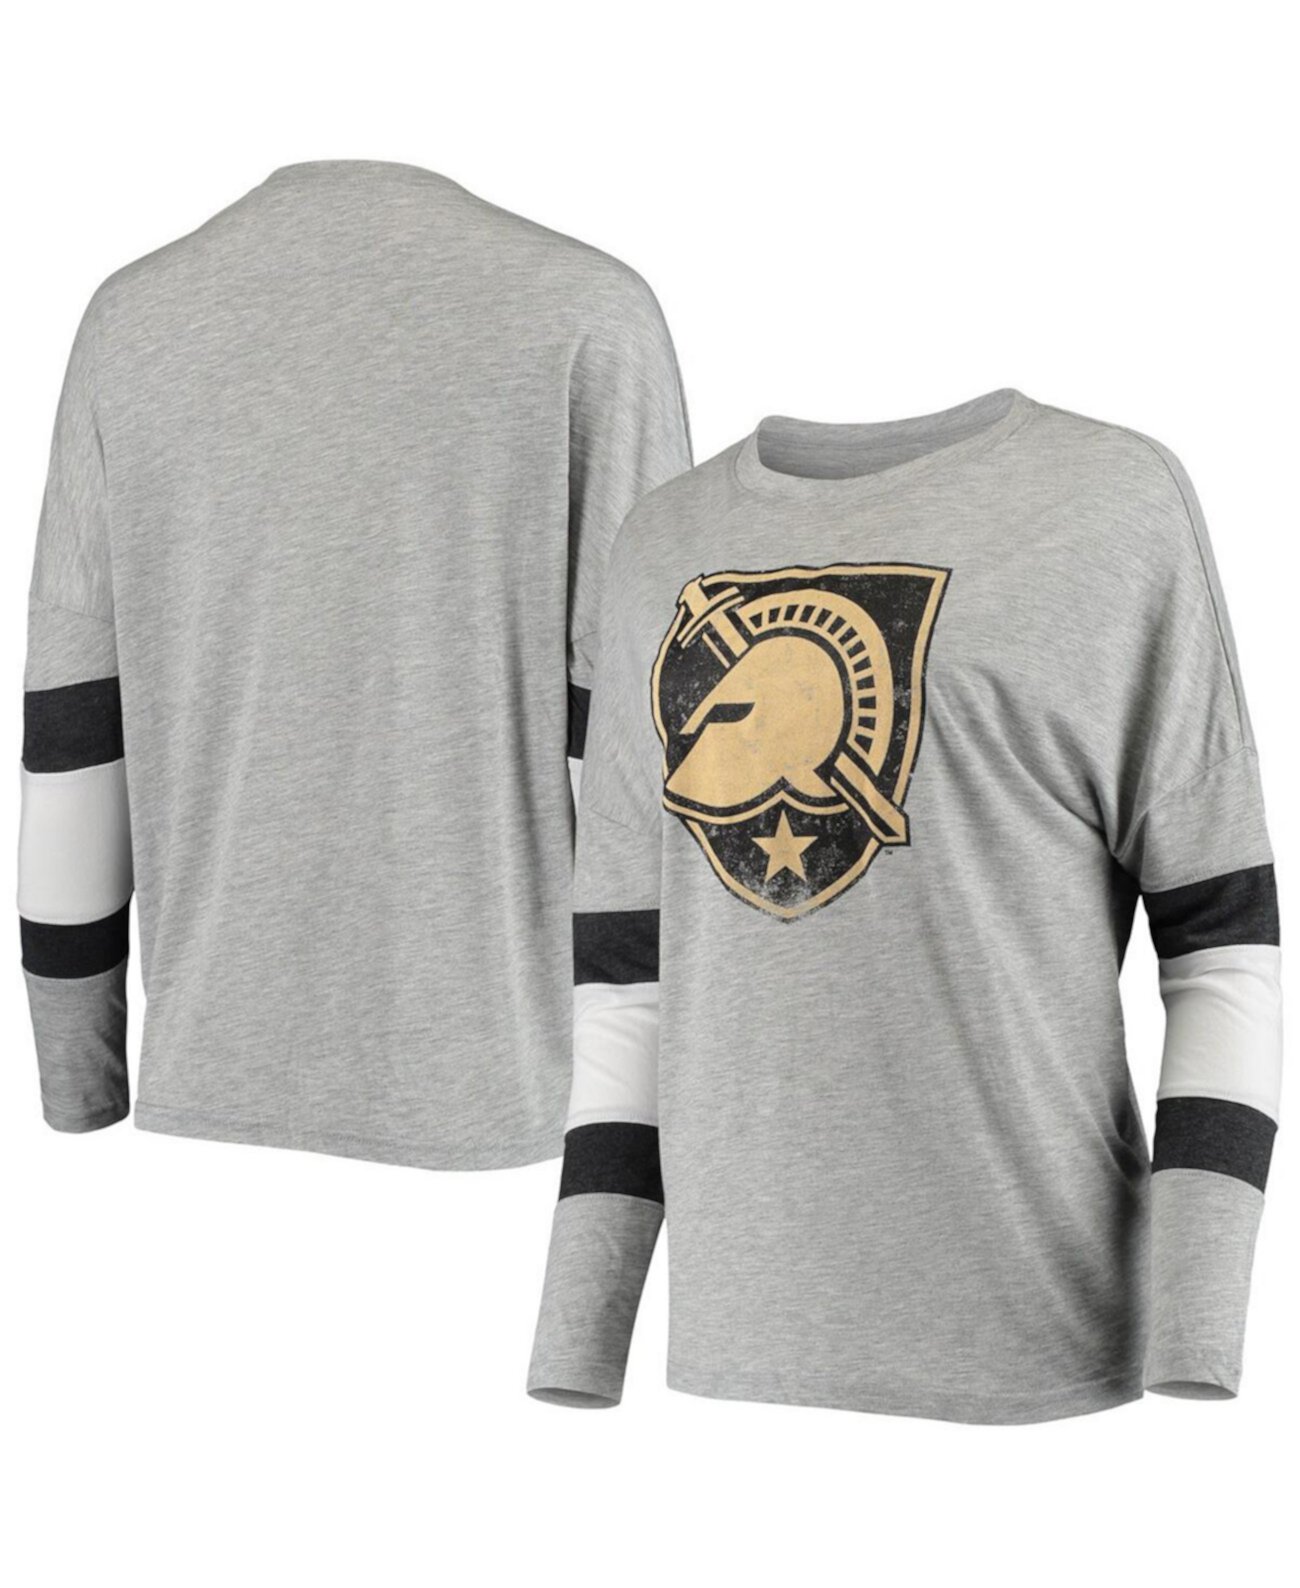 Женская серая футболка в полоску с длинным рукавом в армейском стиле Black Knights Swell Stripe Camp David